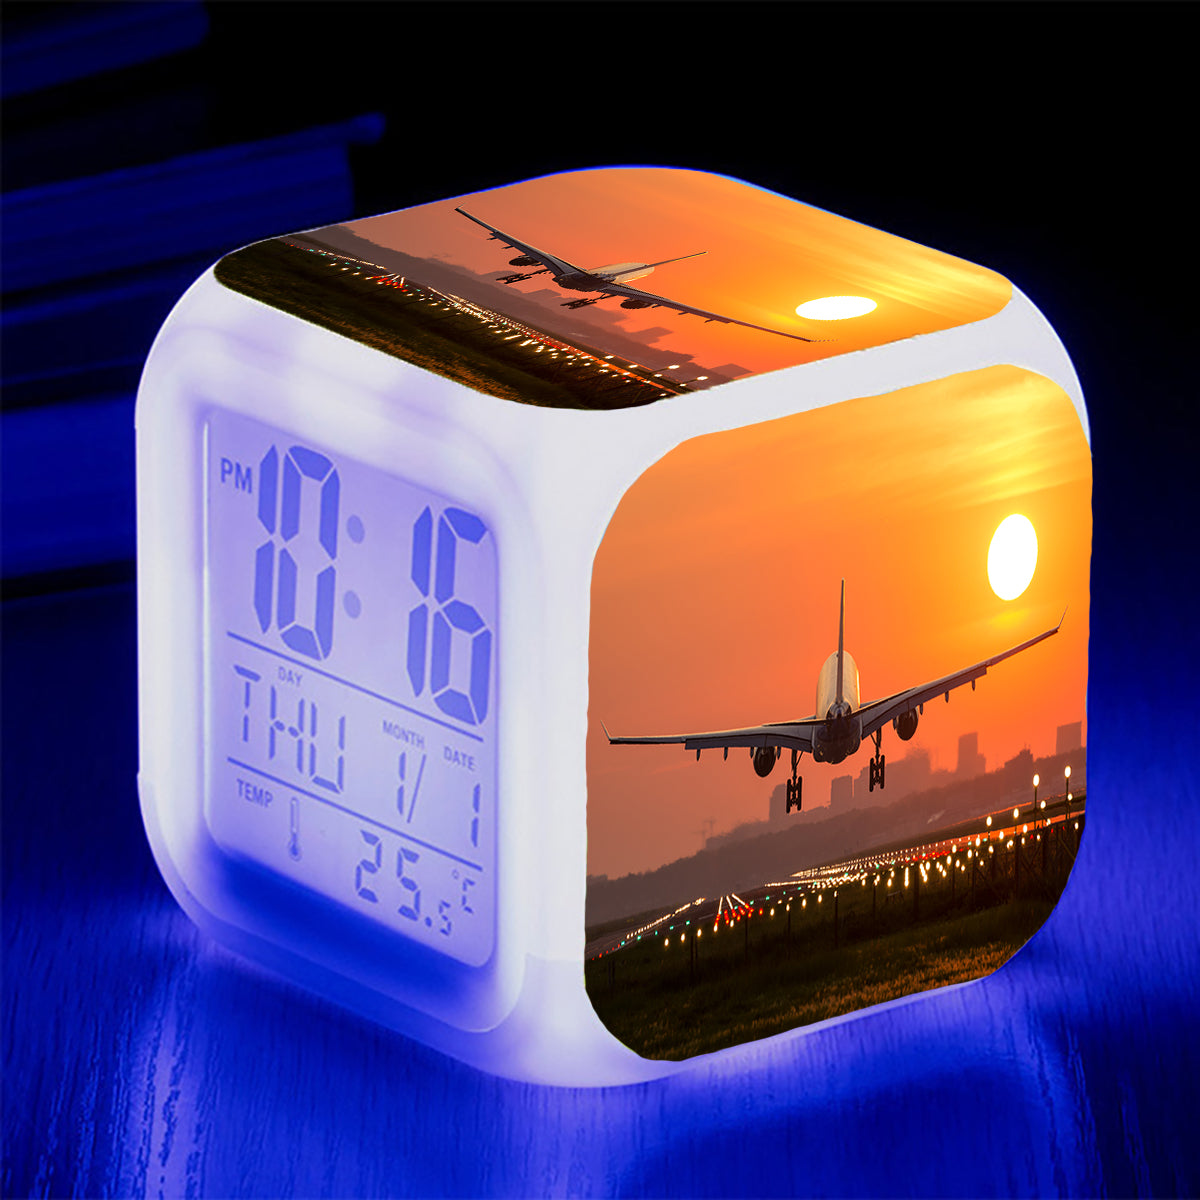 Amazing Airbus A330 Landing at Sunset Designed "7 Colour" Digital Alarm Clock